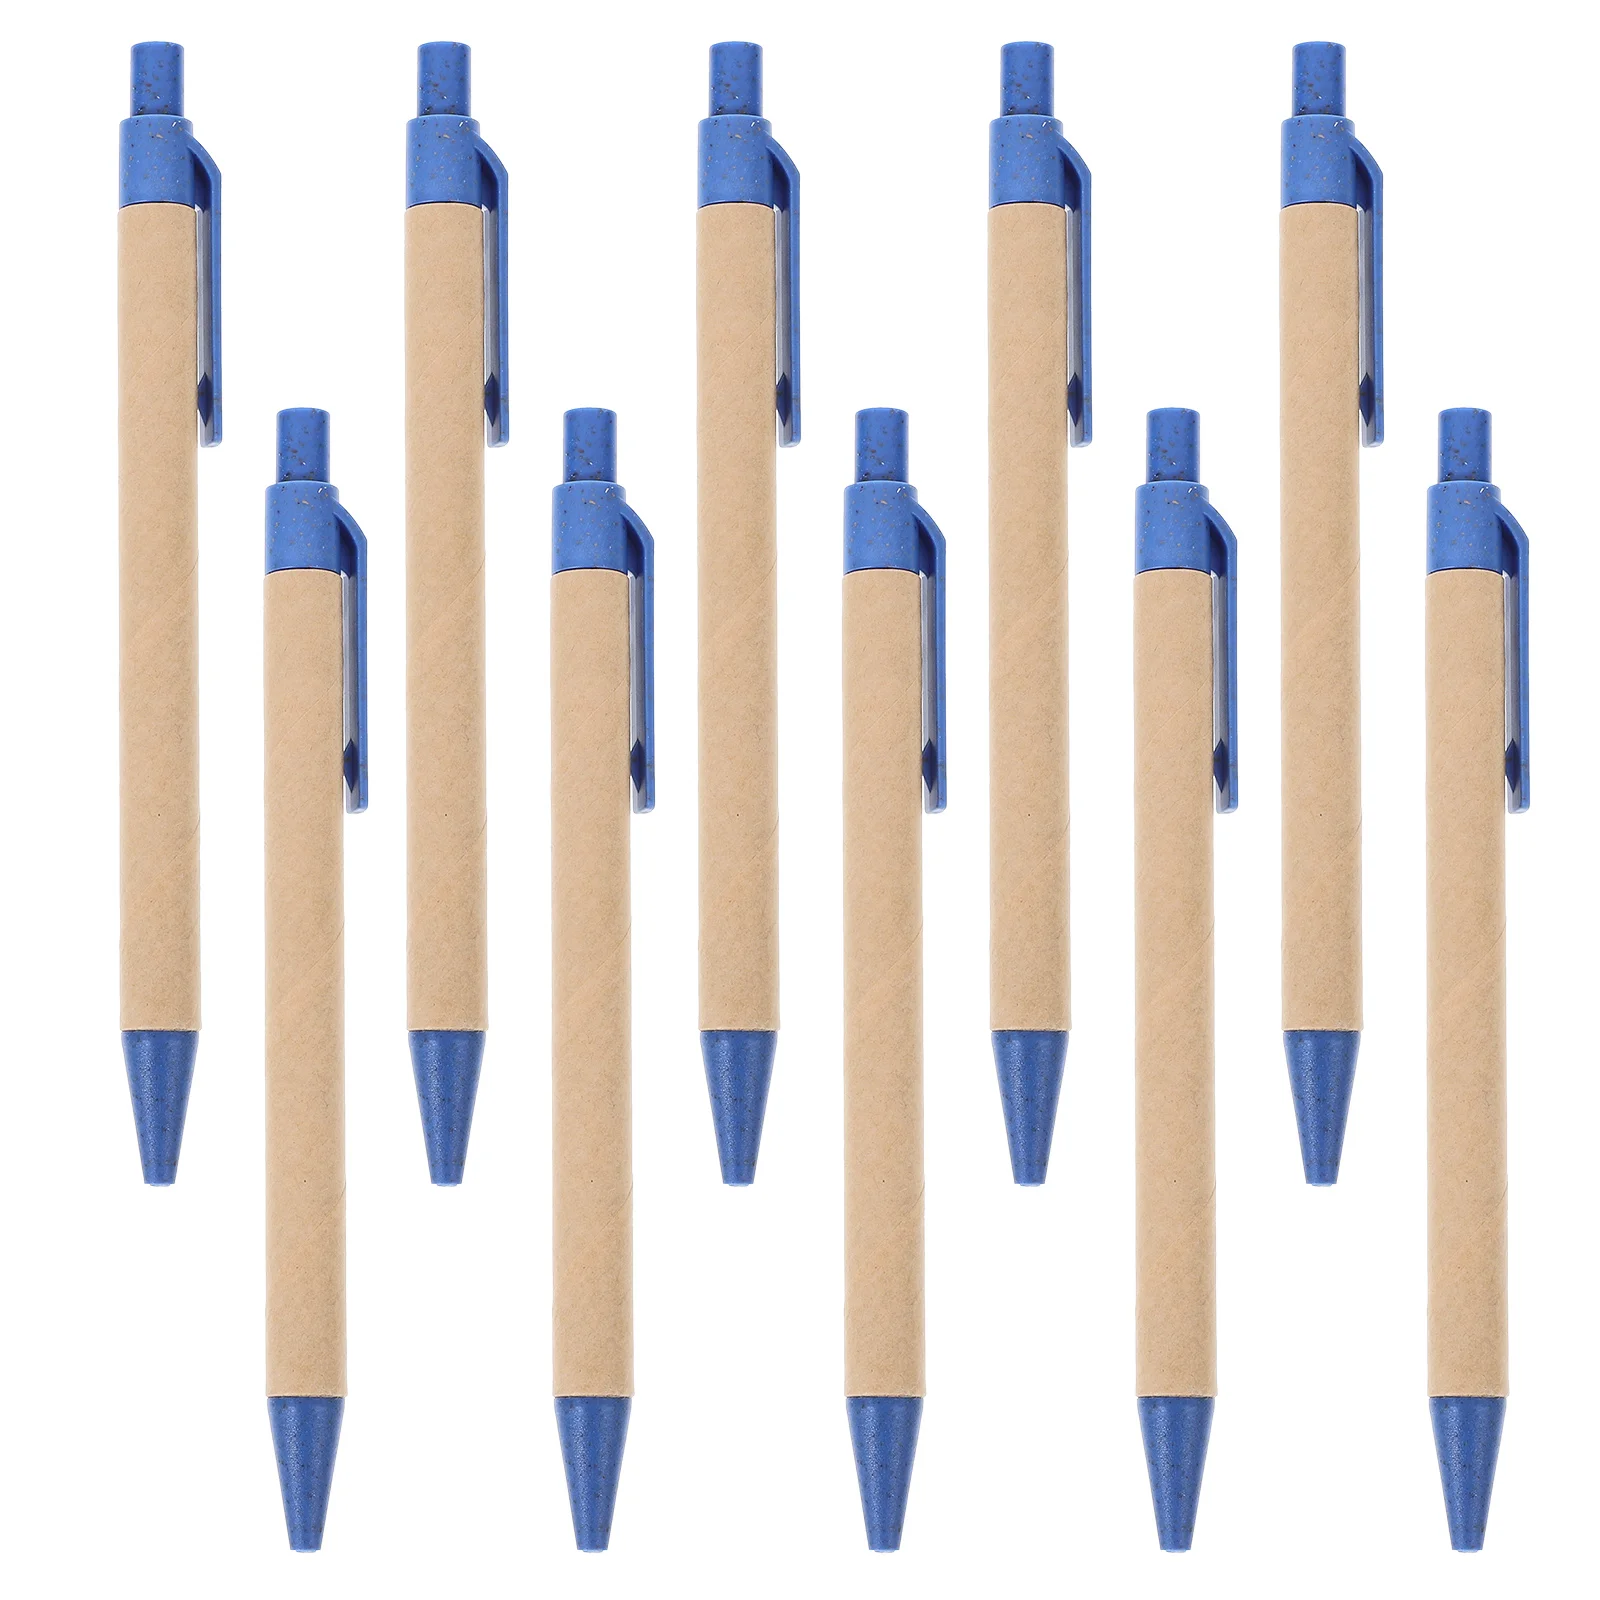 

10 шт. многофункциональные ручки для письма, шариковые ручки для ежедневного использования, портативные школьные ручки, домашний аксессуар